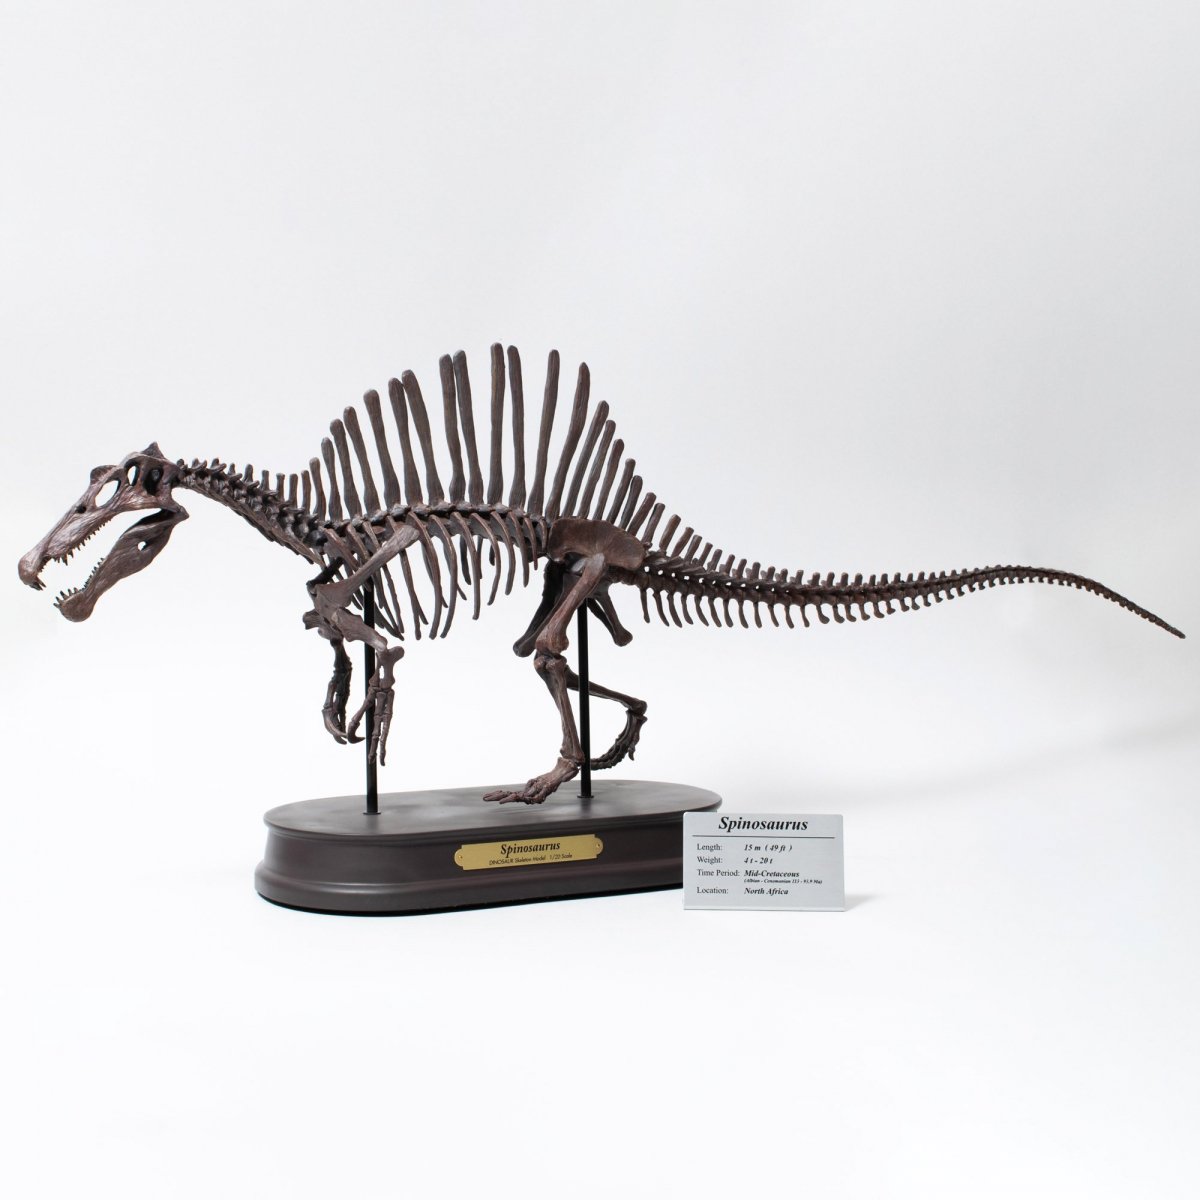 とっておきし新春福袋 化石標本 恐竜 獣脚類 スピノサウルス 特大